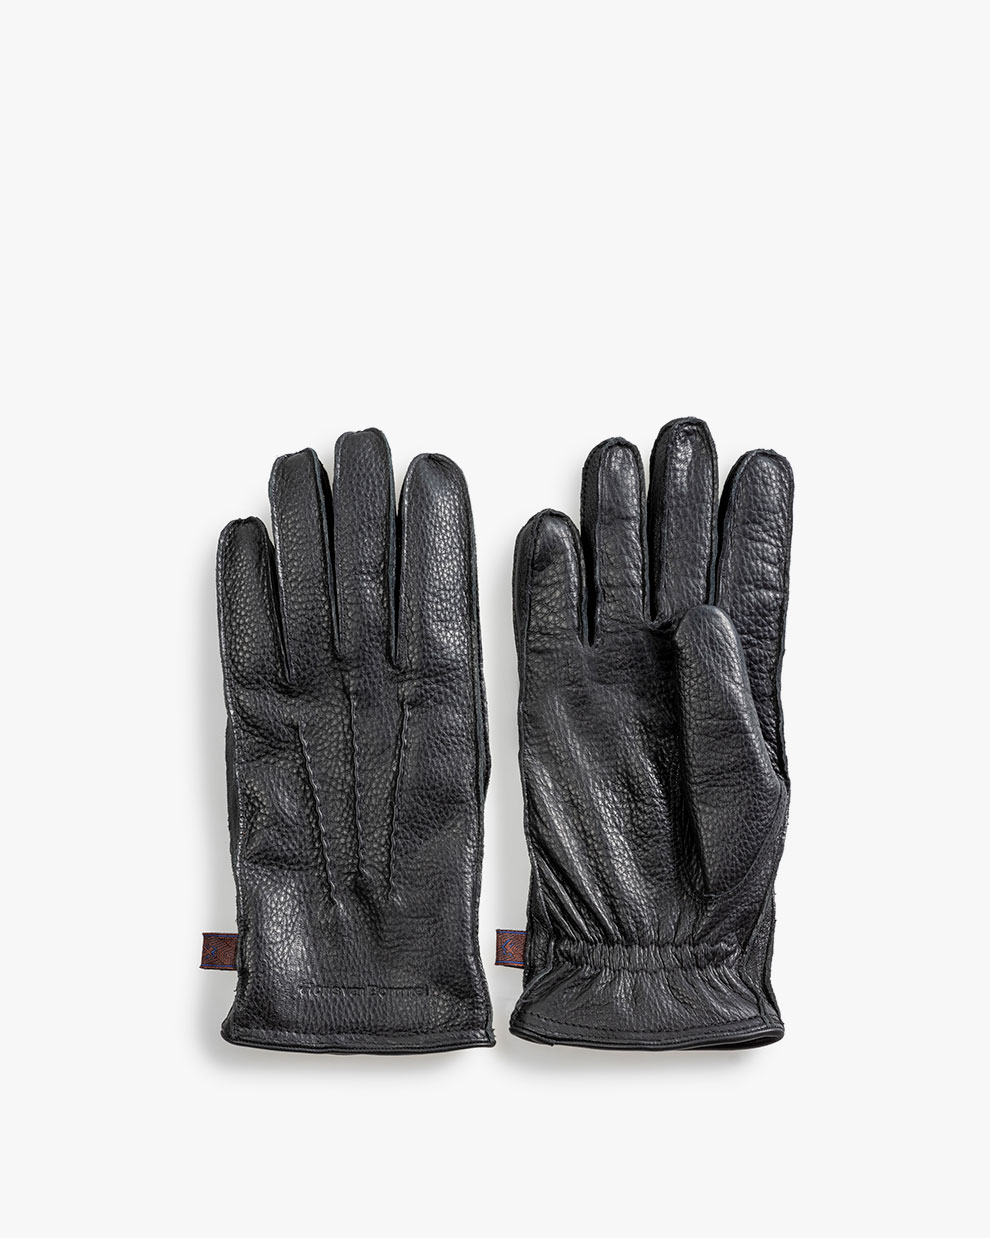 Konijn vertraging Onderdrukker Handschoenen leer zwart AFM-10020-10-01 | Floris van Bommel®